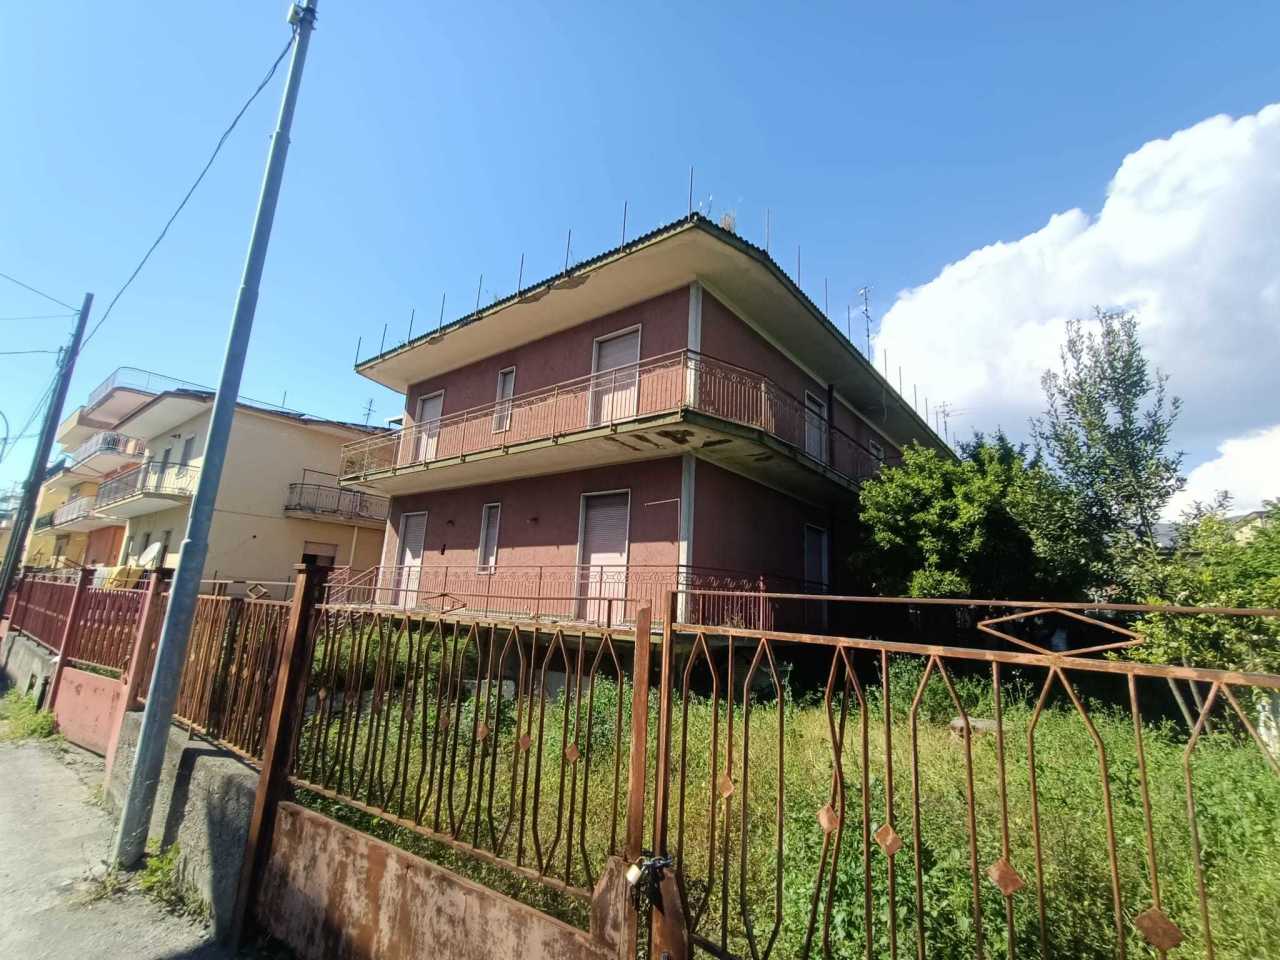 Appartamento in vendita a Striano, 9999 locali, prezzo € 140.000 | PortaleAgenzieImmobiliari.it